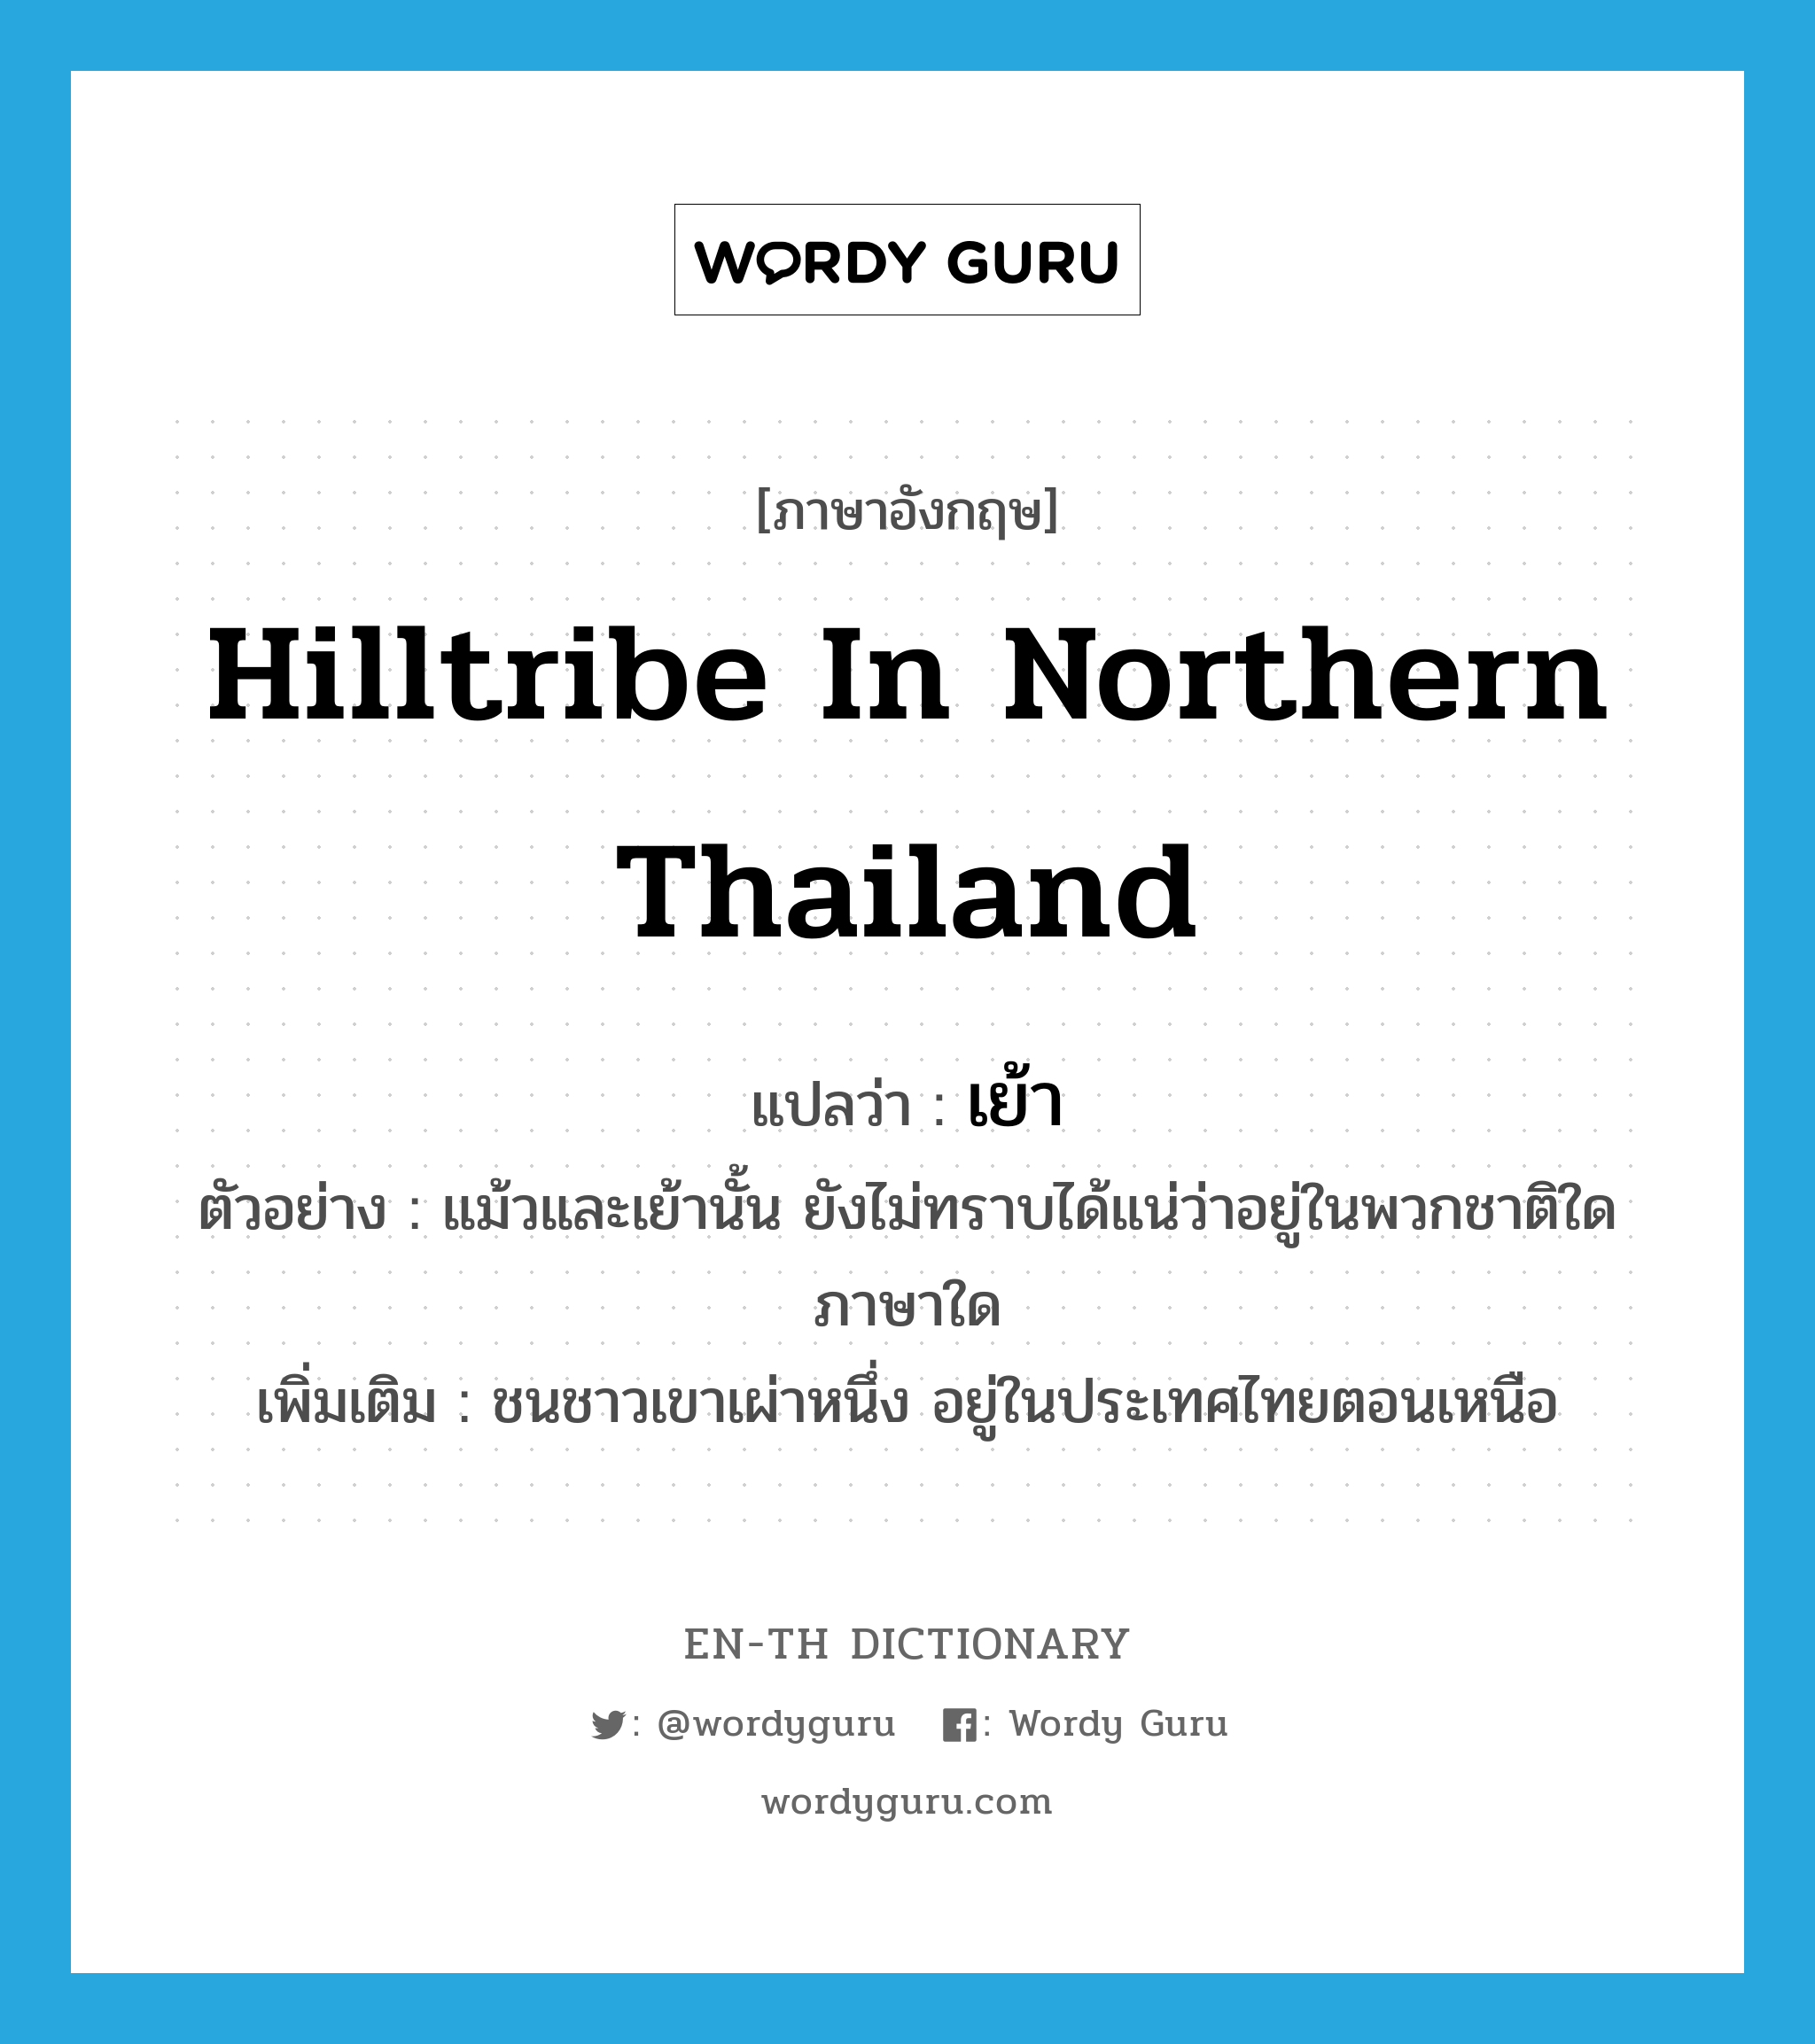 เย้า ภาษาอังกฤษ?, คำศัพท์ภาษาอังกฤษ เย้า แปลว่า hilltribe in northern Thailand ประเภท N ตัวอย่าง แม้วและเย้านั้น ยังไม่ทราบได้แน่ว่าอยู่ในพวกชาติใด ภาษาใด เพิ่มเติม ชนชาวเขาเผ่าหนึ่ง อยู่ในประเทศไทยตอนเหนือ หมวด N